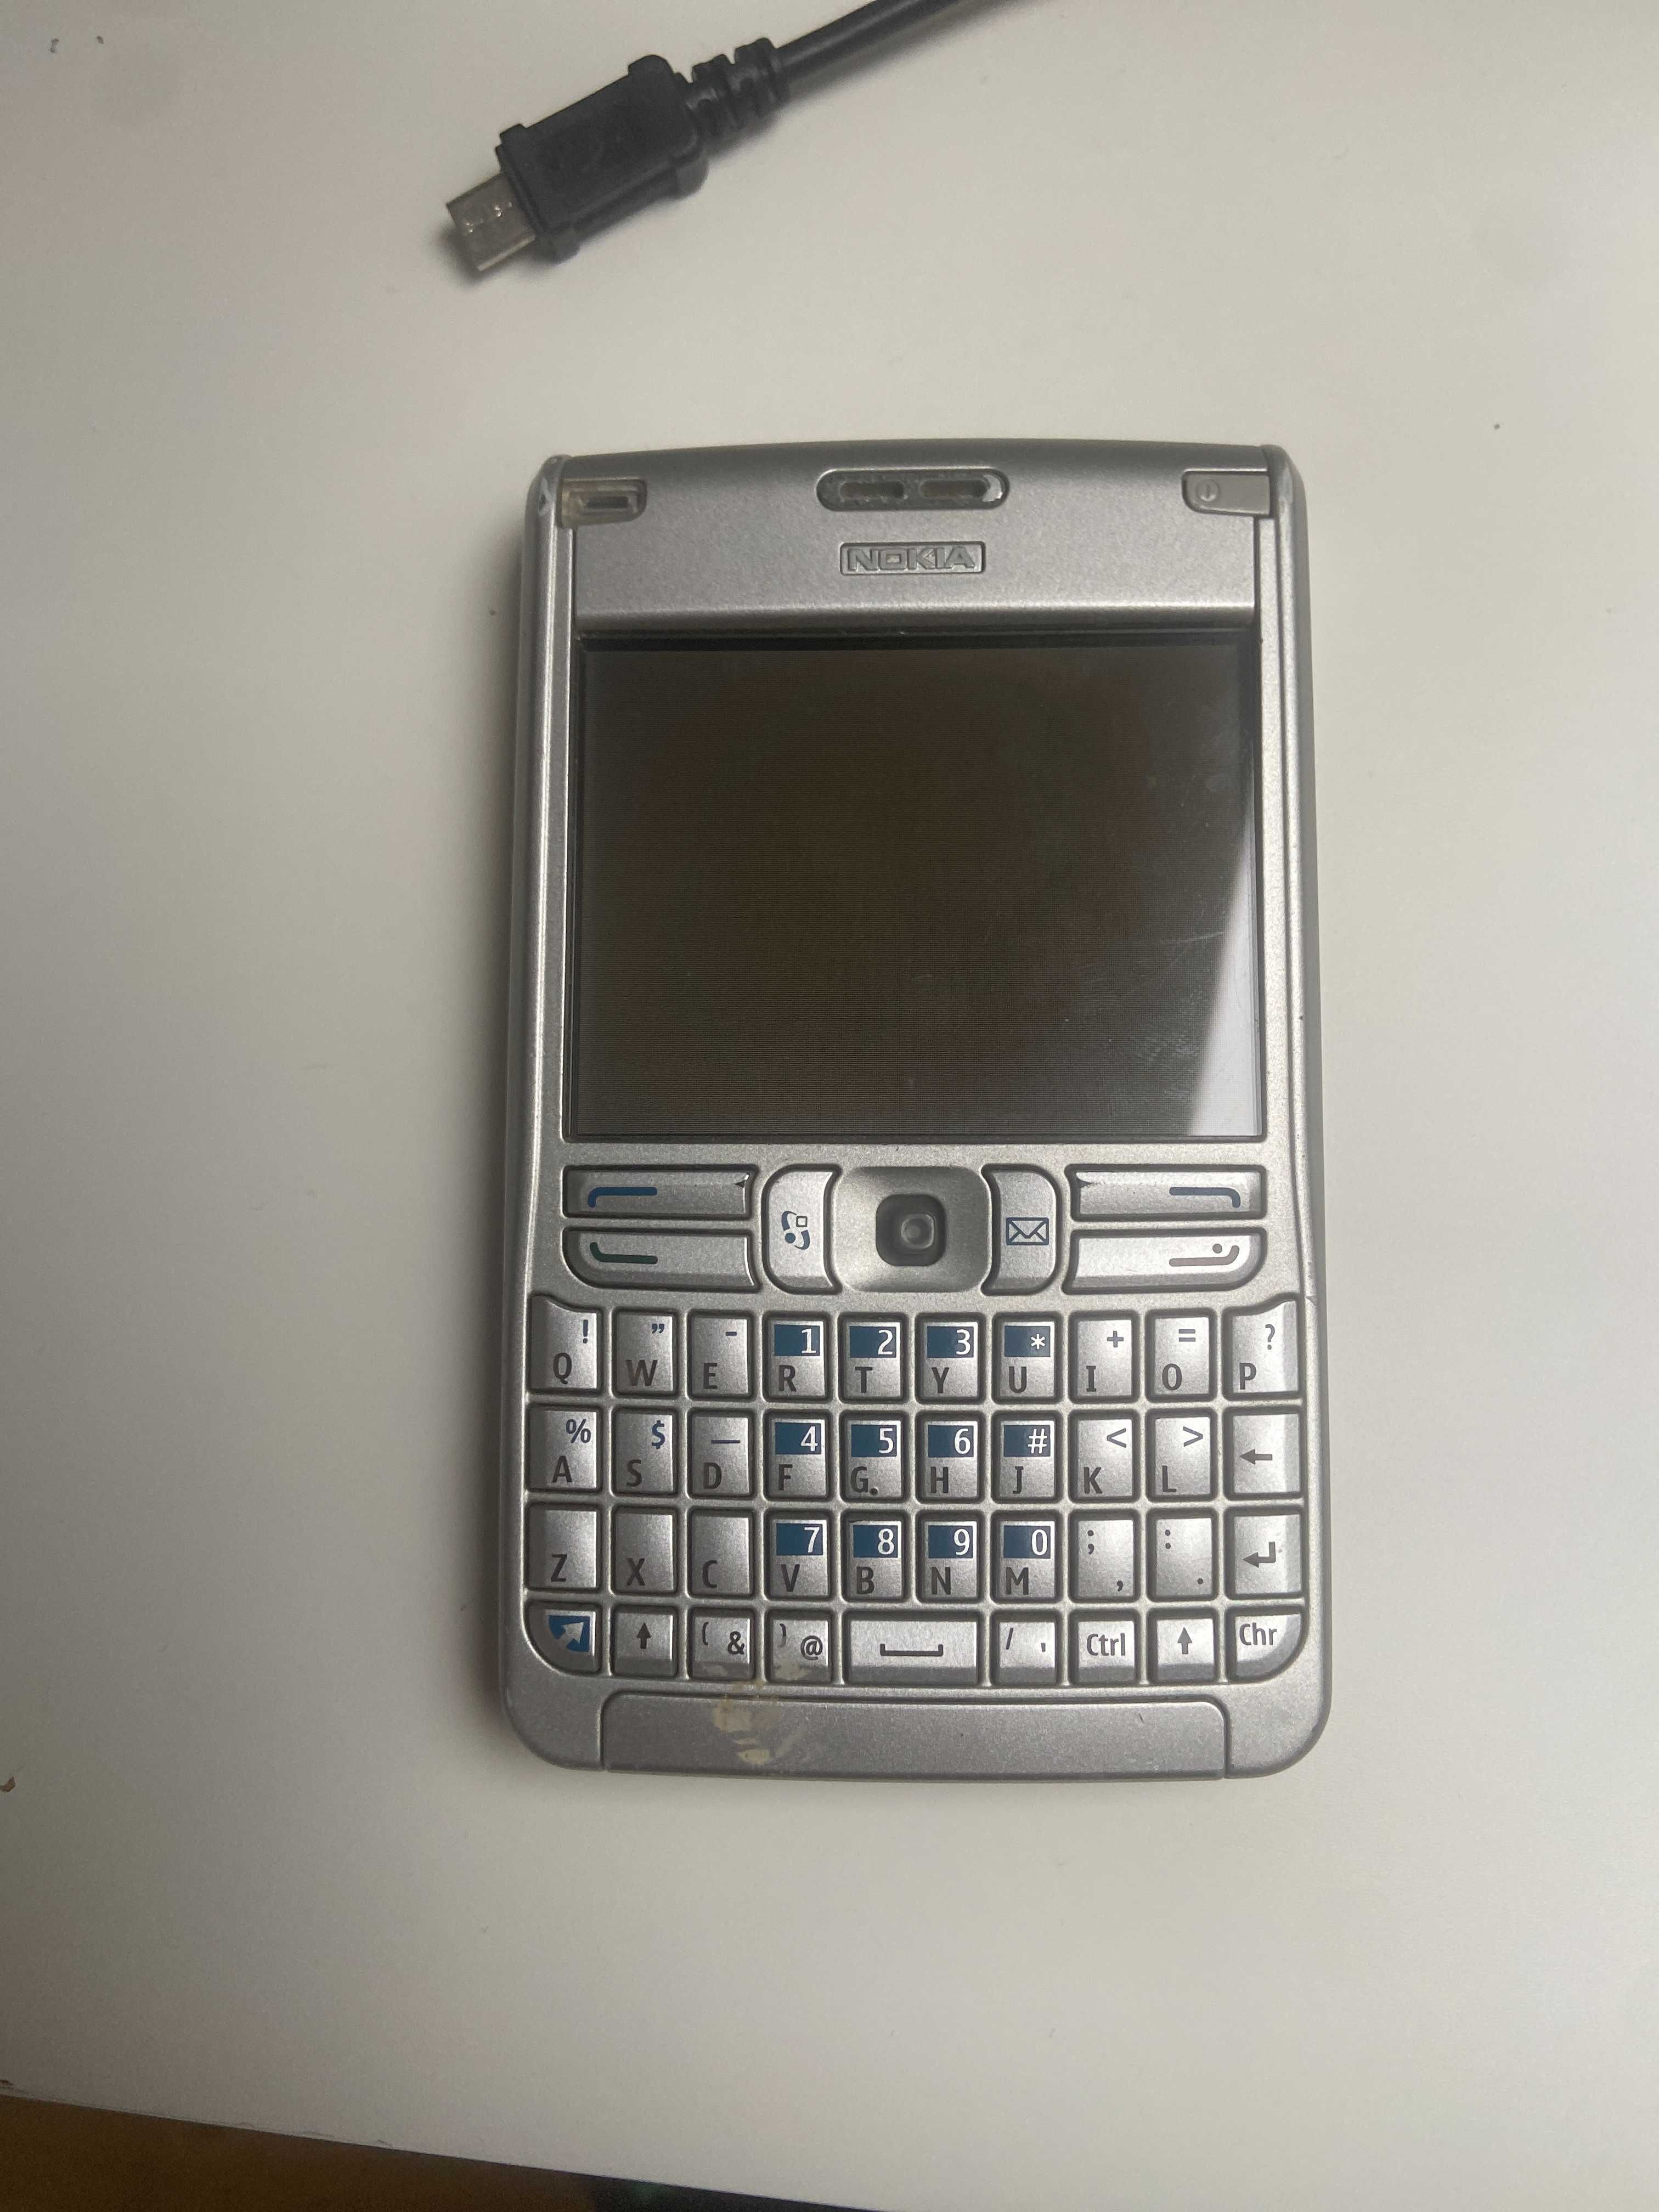 Nokia E61-1 (Gruba) - Używana